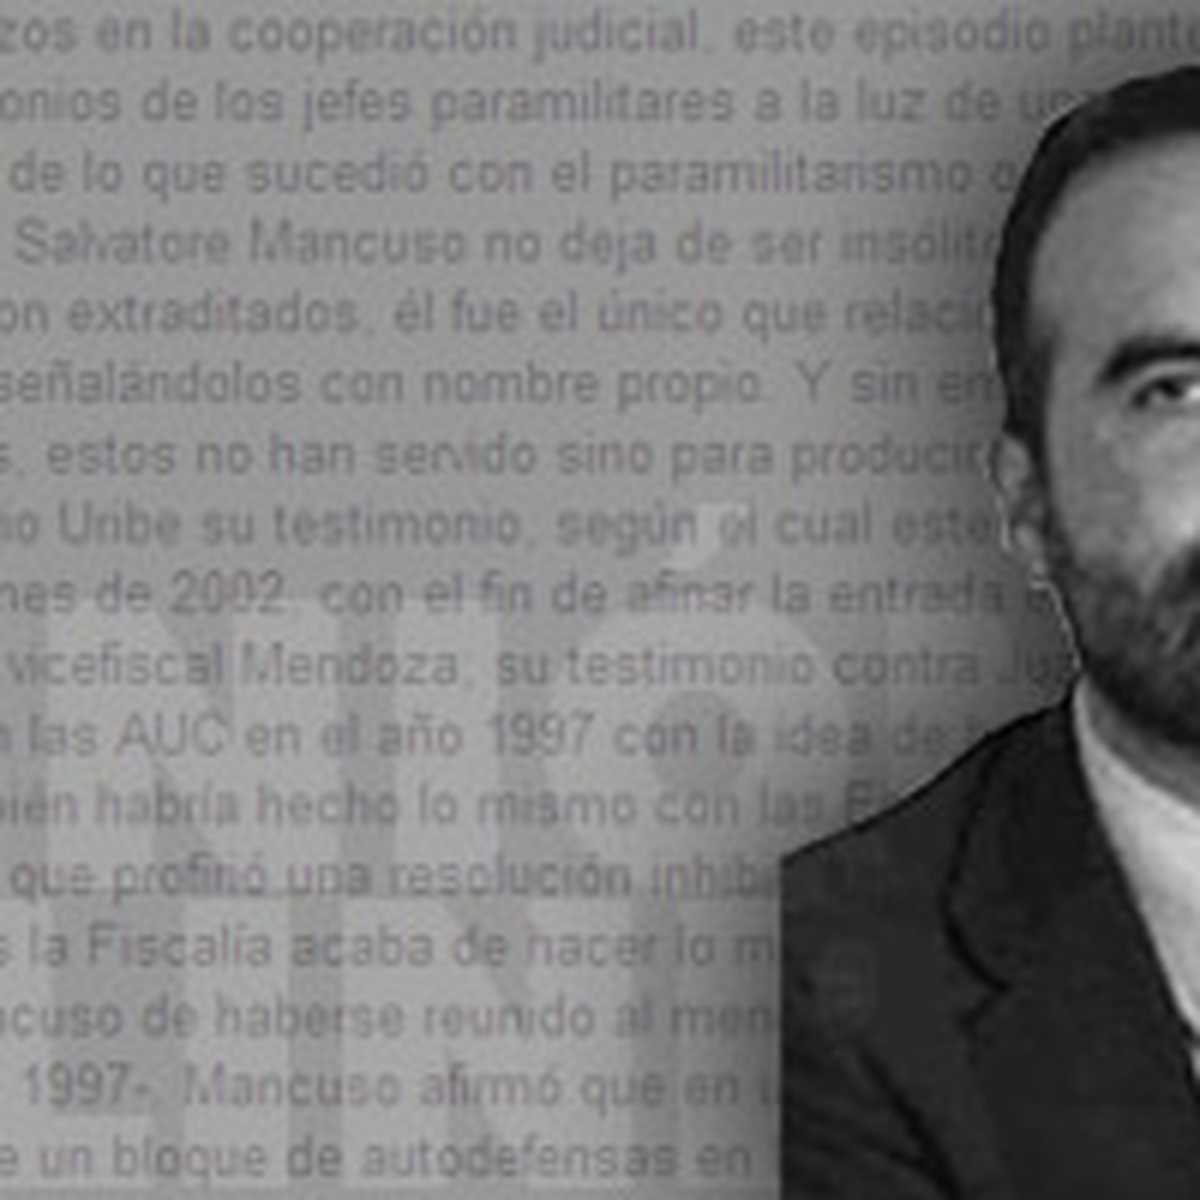 Luis Eduardo Celis